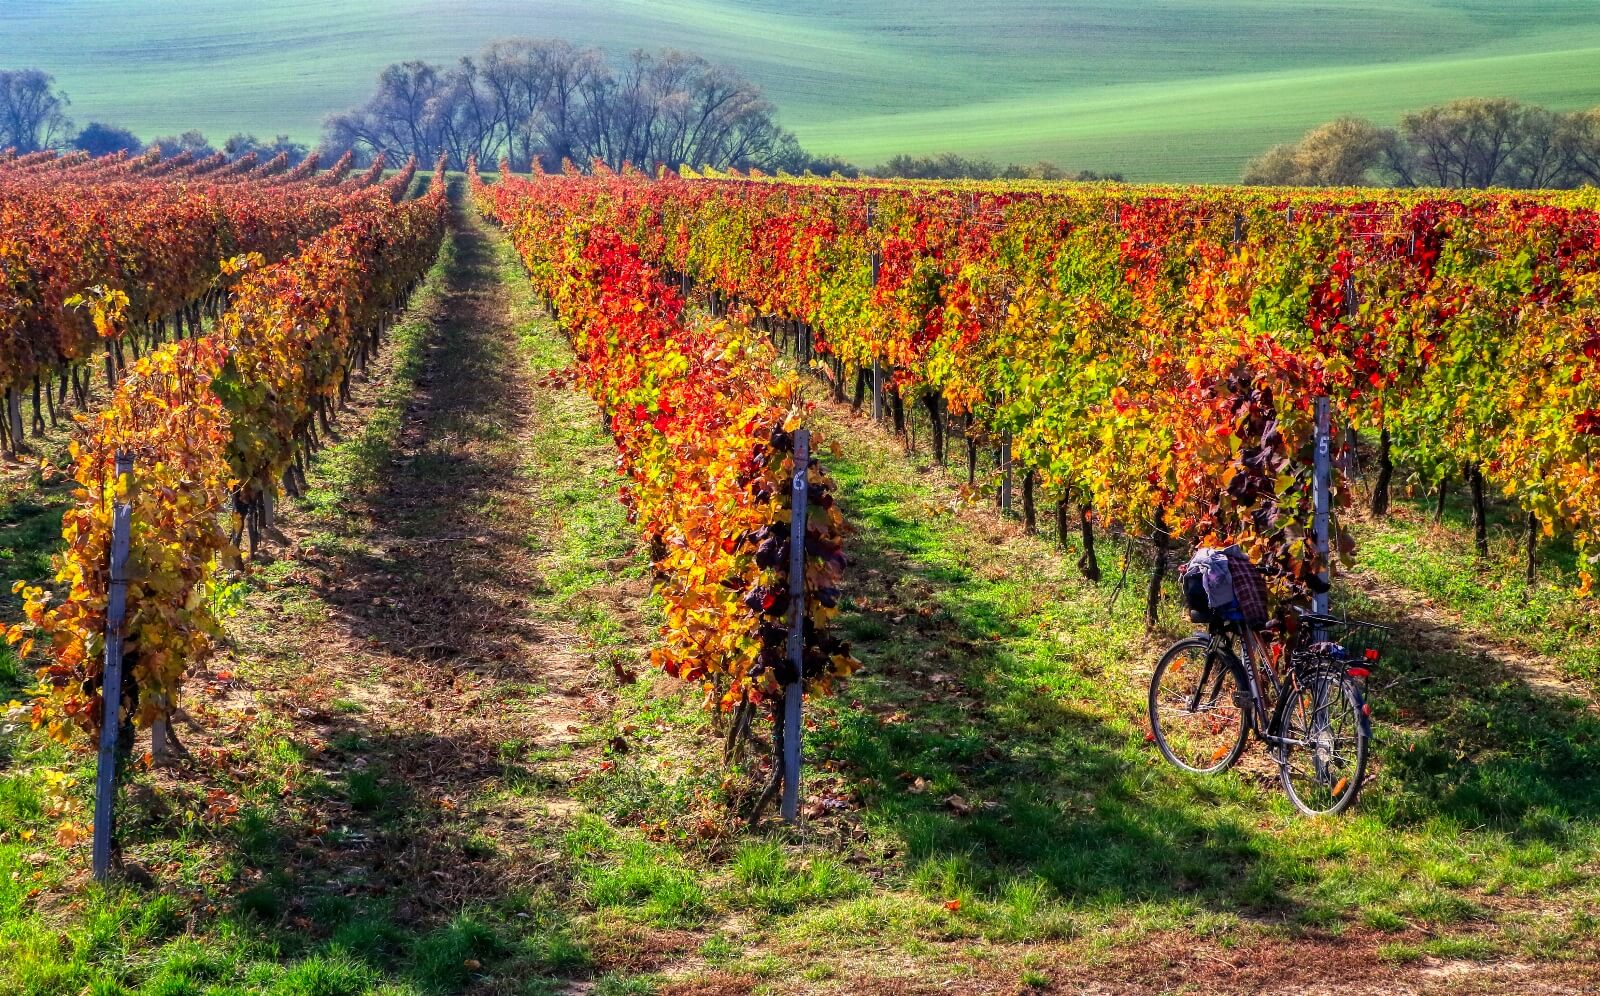 Image of Josef Dufek vineyard by Les Rhoades